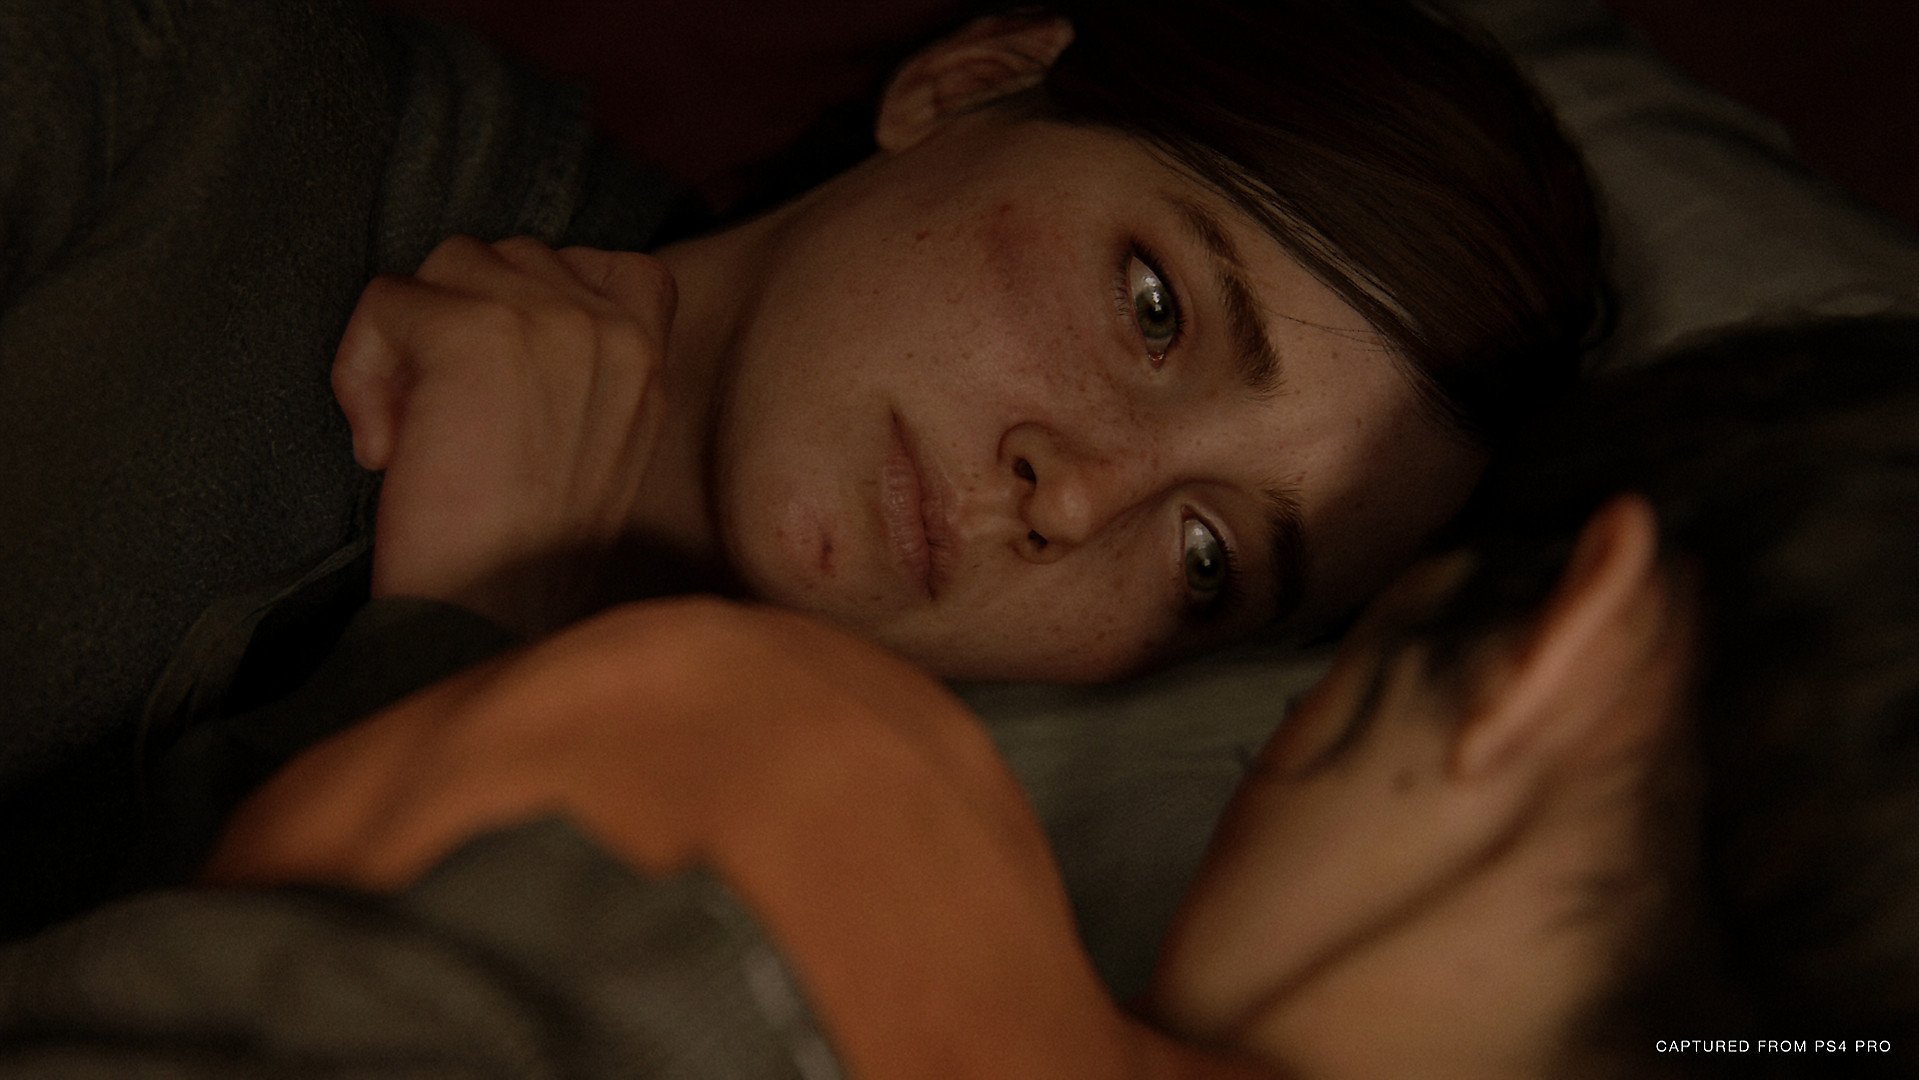 Obrisi The Last of Us 3 priče već su napisani, kaže Neil Druckmann